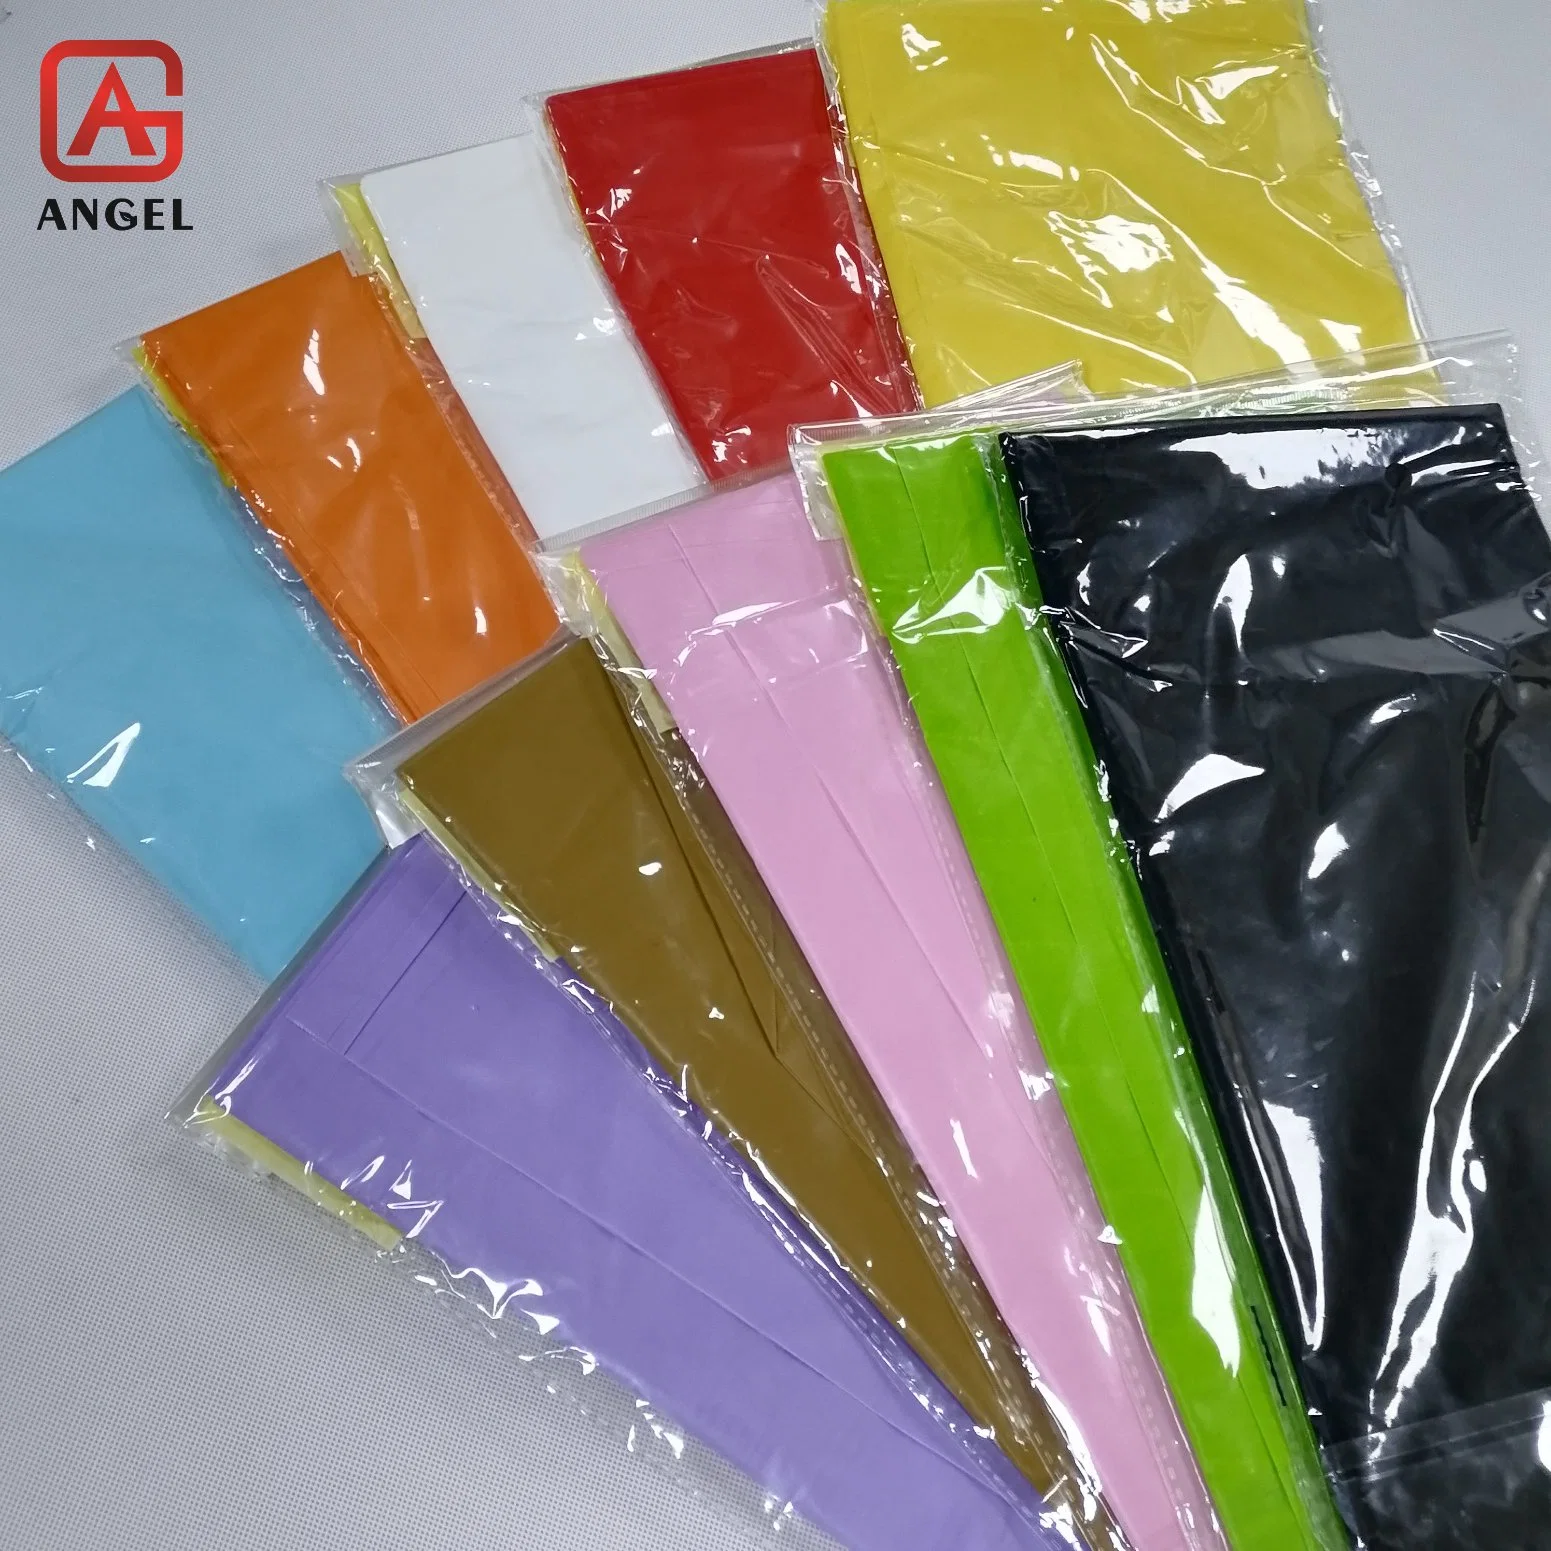 Cobertura da mesa em PVC Fujian Angel, toalhas de plástico descartáveis